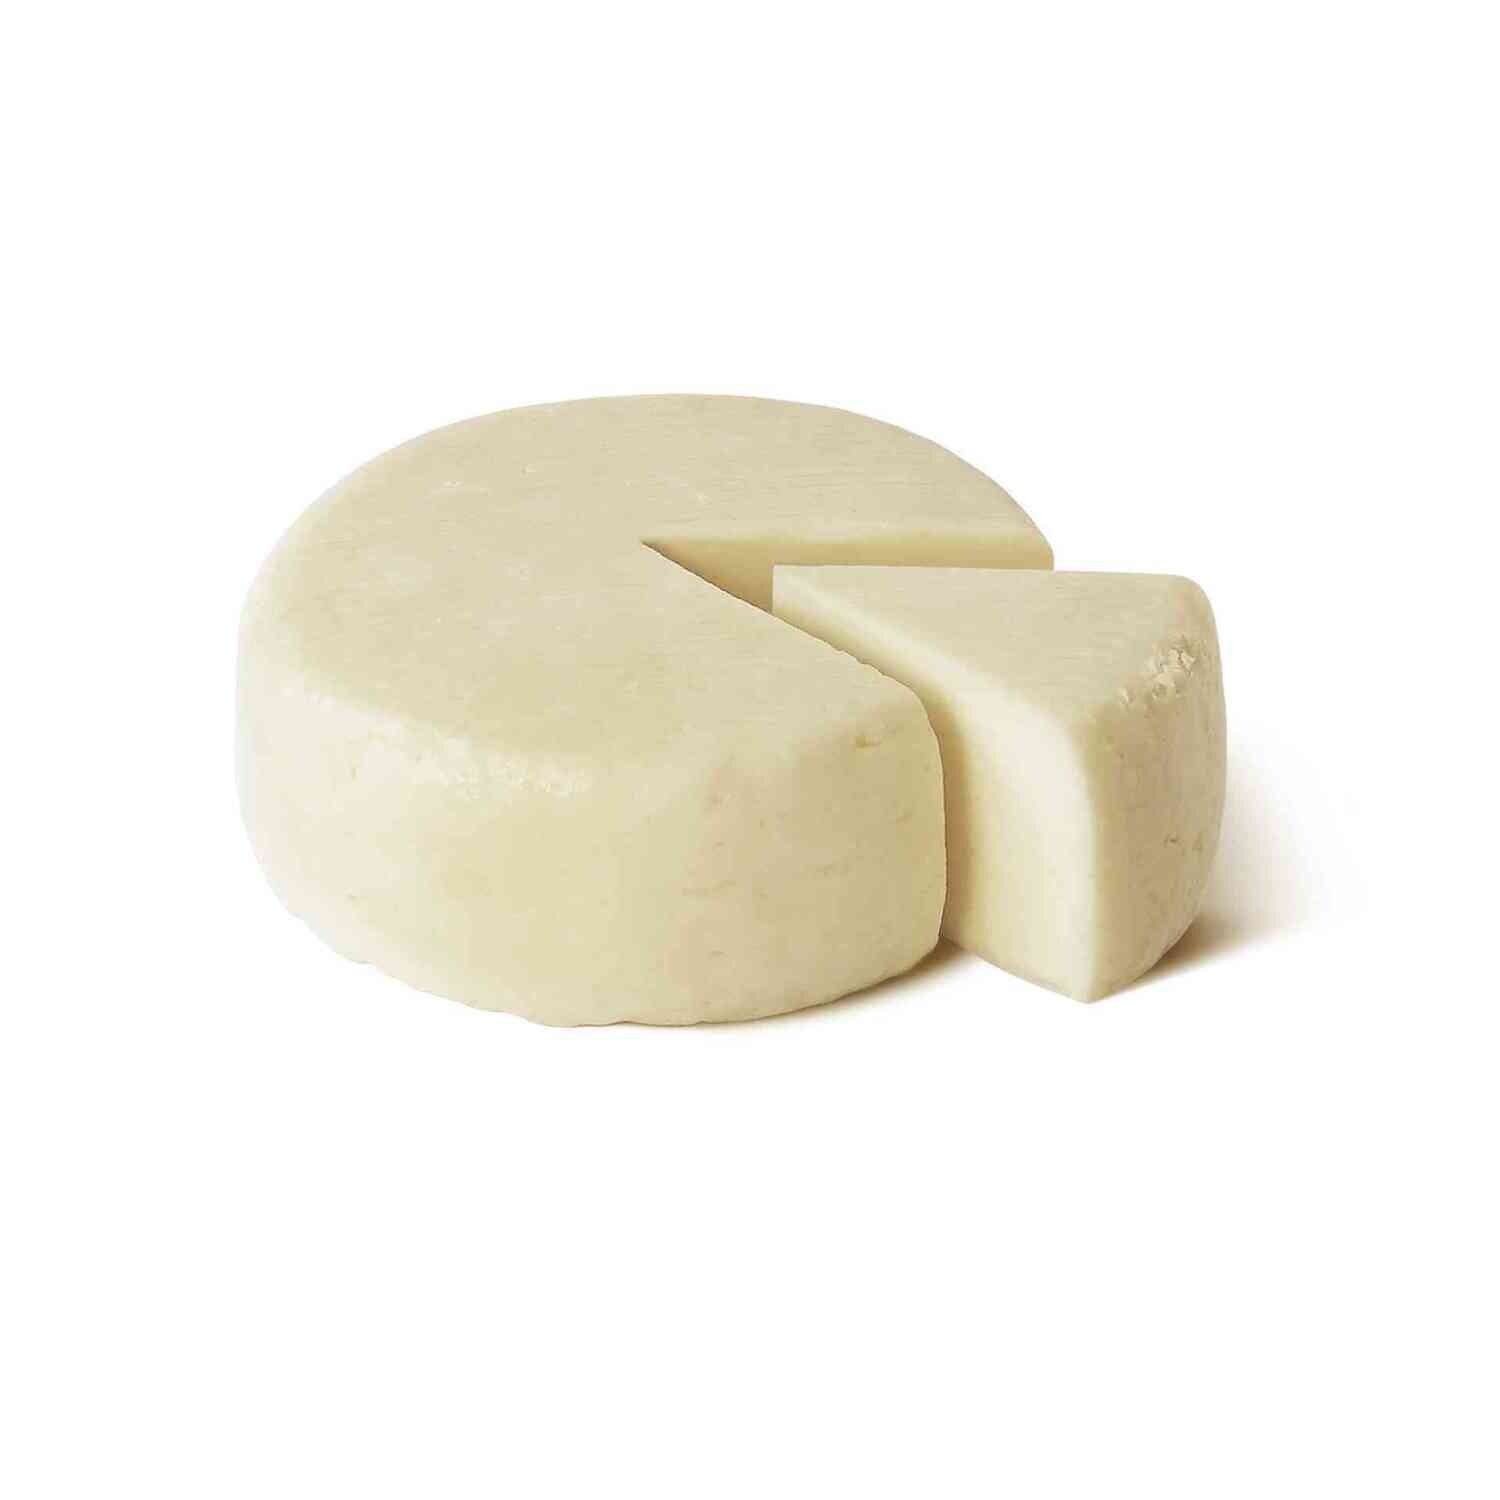 Сыр Качотта из козьего молока 45%, Relaggio, 220 г